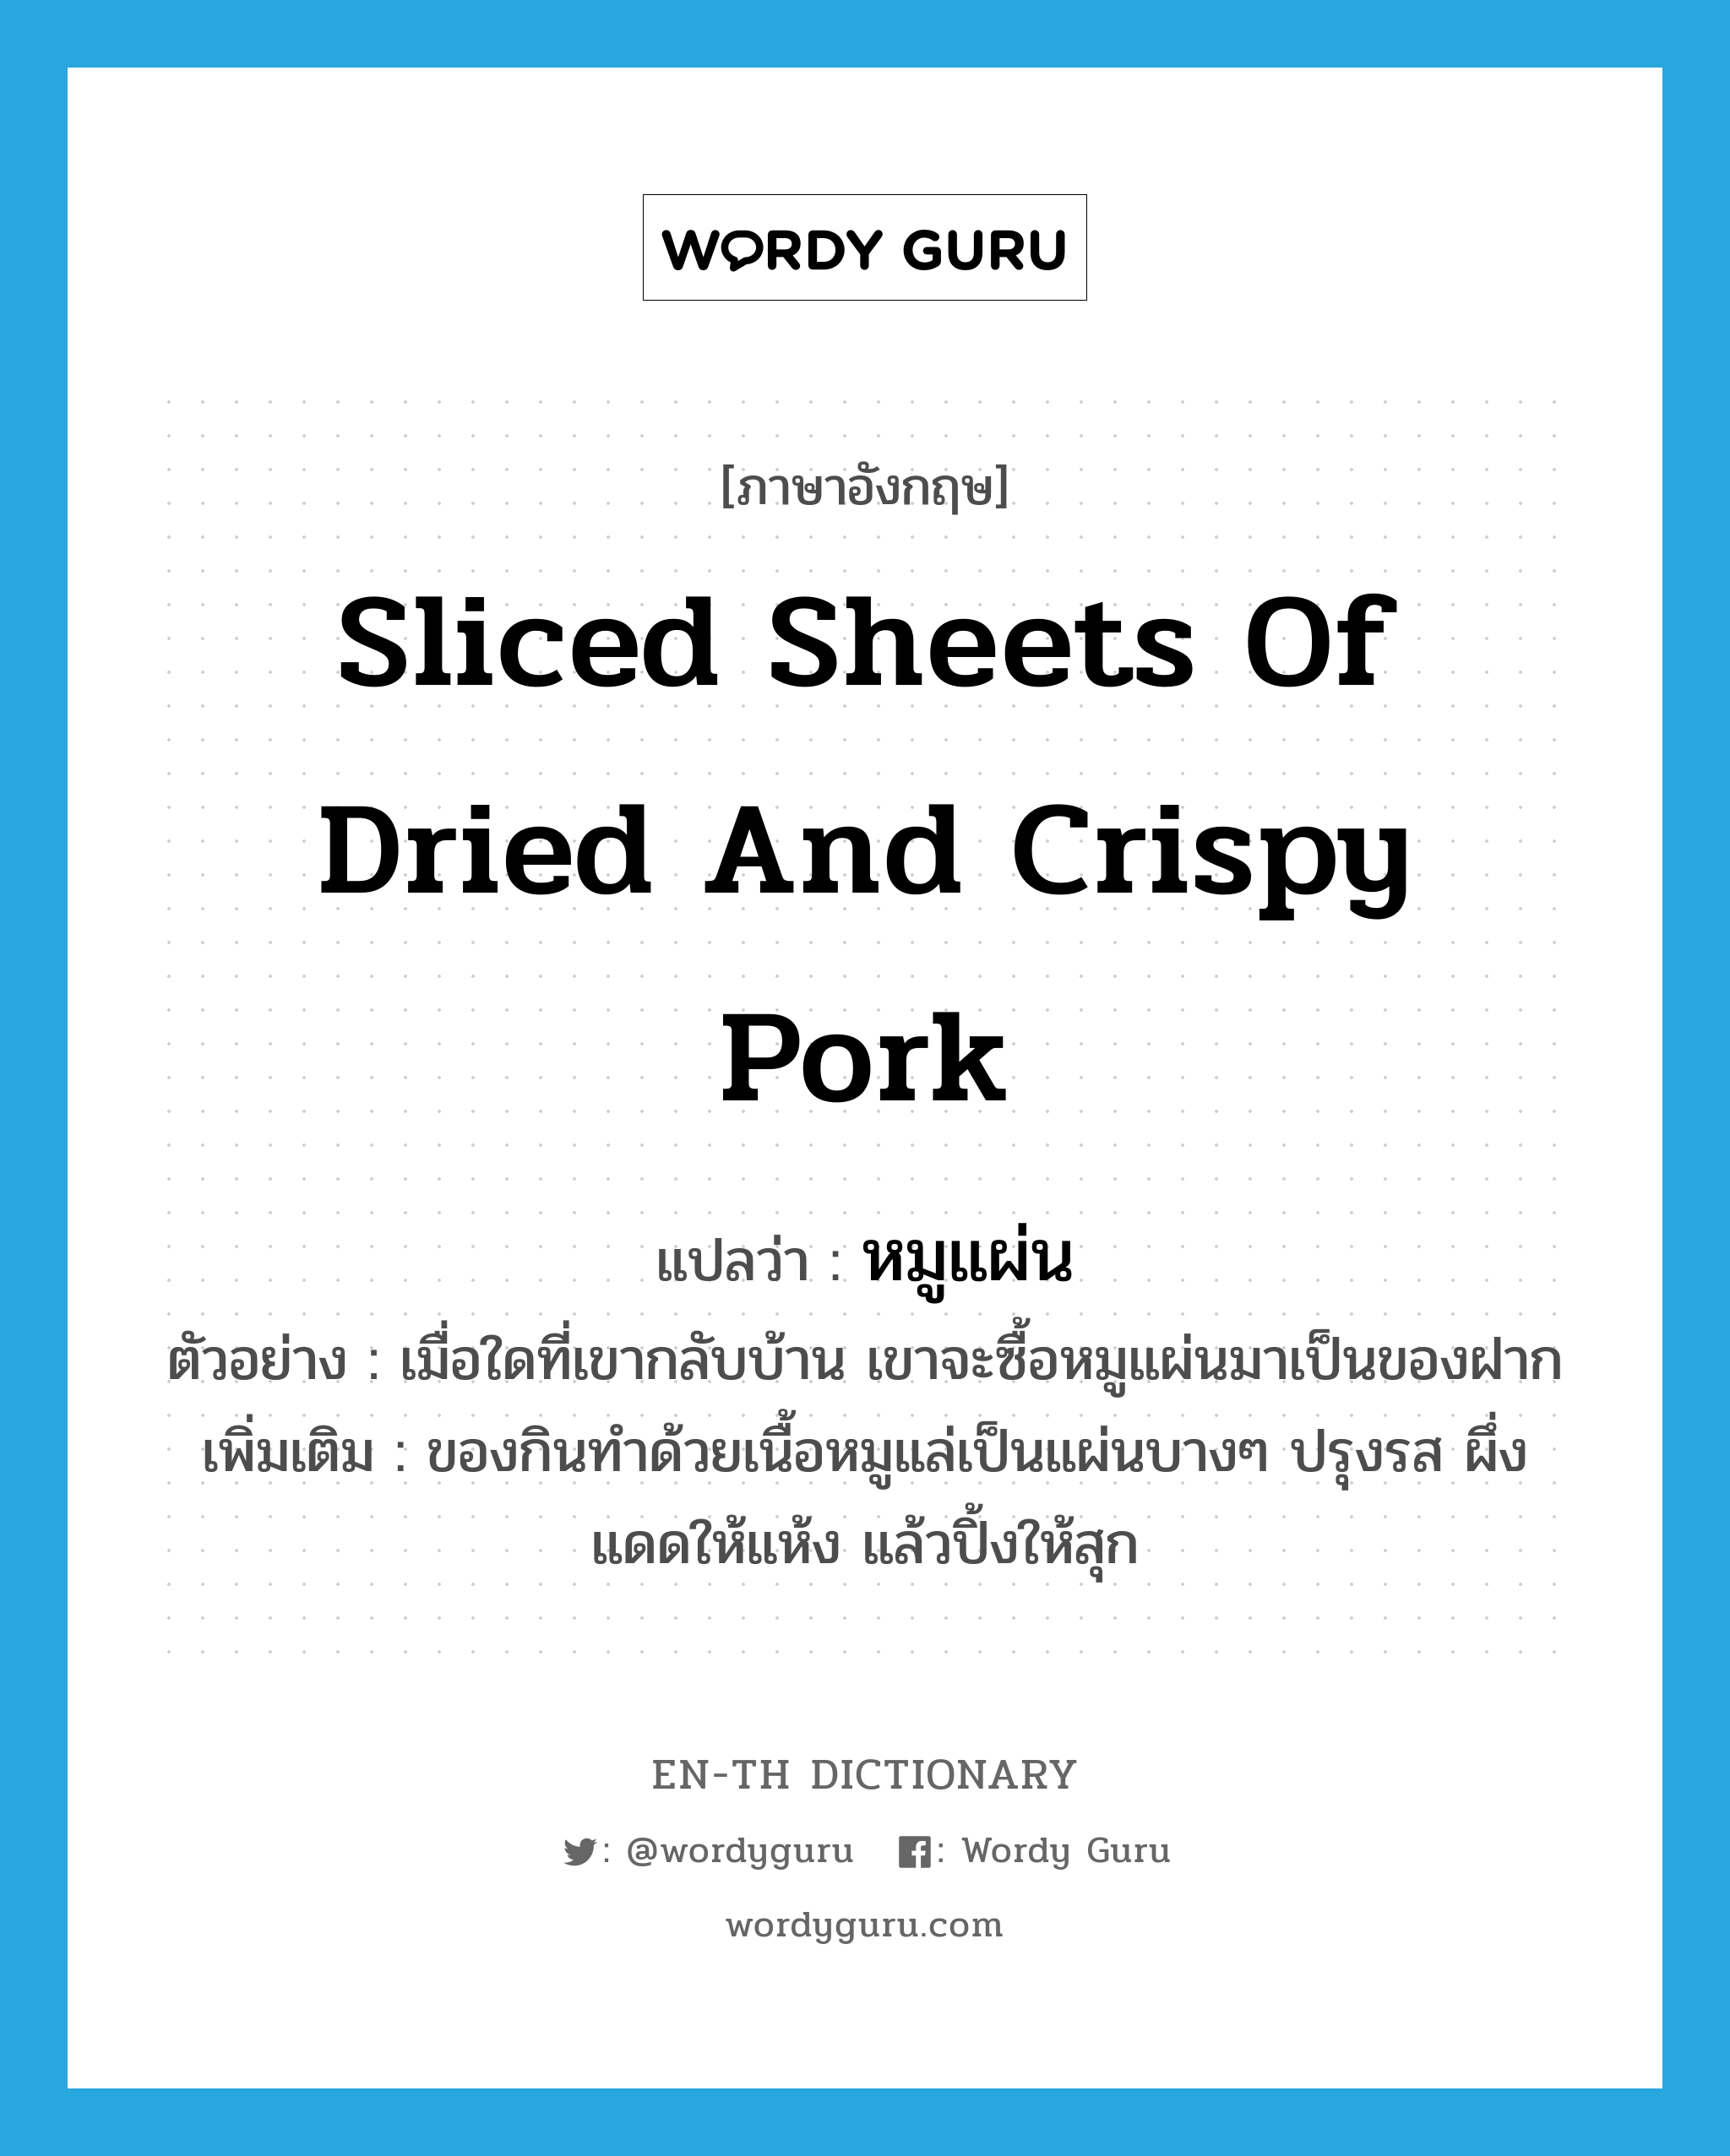 หมูแผ่น ภาษาอังกฤษ?, คำศัพท์ภาษาอังกฤษ หมูแผ่น แปลว่า sliced sheets of dried and crispy pork ประเภท N ตัวอย่าง เมื่อใดที่เขากลับบ้าน เขาจะซื้อหมูแผ่นมาเป็นของฝาก เพิ่มเติม ของกินทำด้วยเนื้อหมูแล่เป็นแผ่นบางๆ ปรุงรส ผึ่งแดดให้แห้ง แล้วปิ้งให้สุก หมวด N